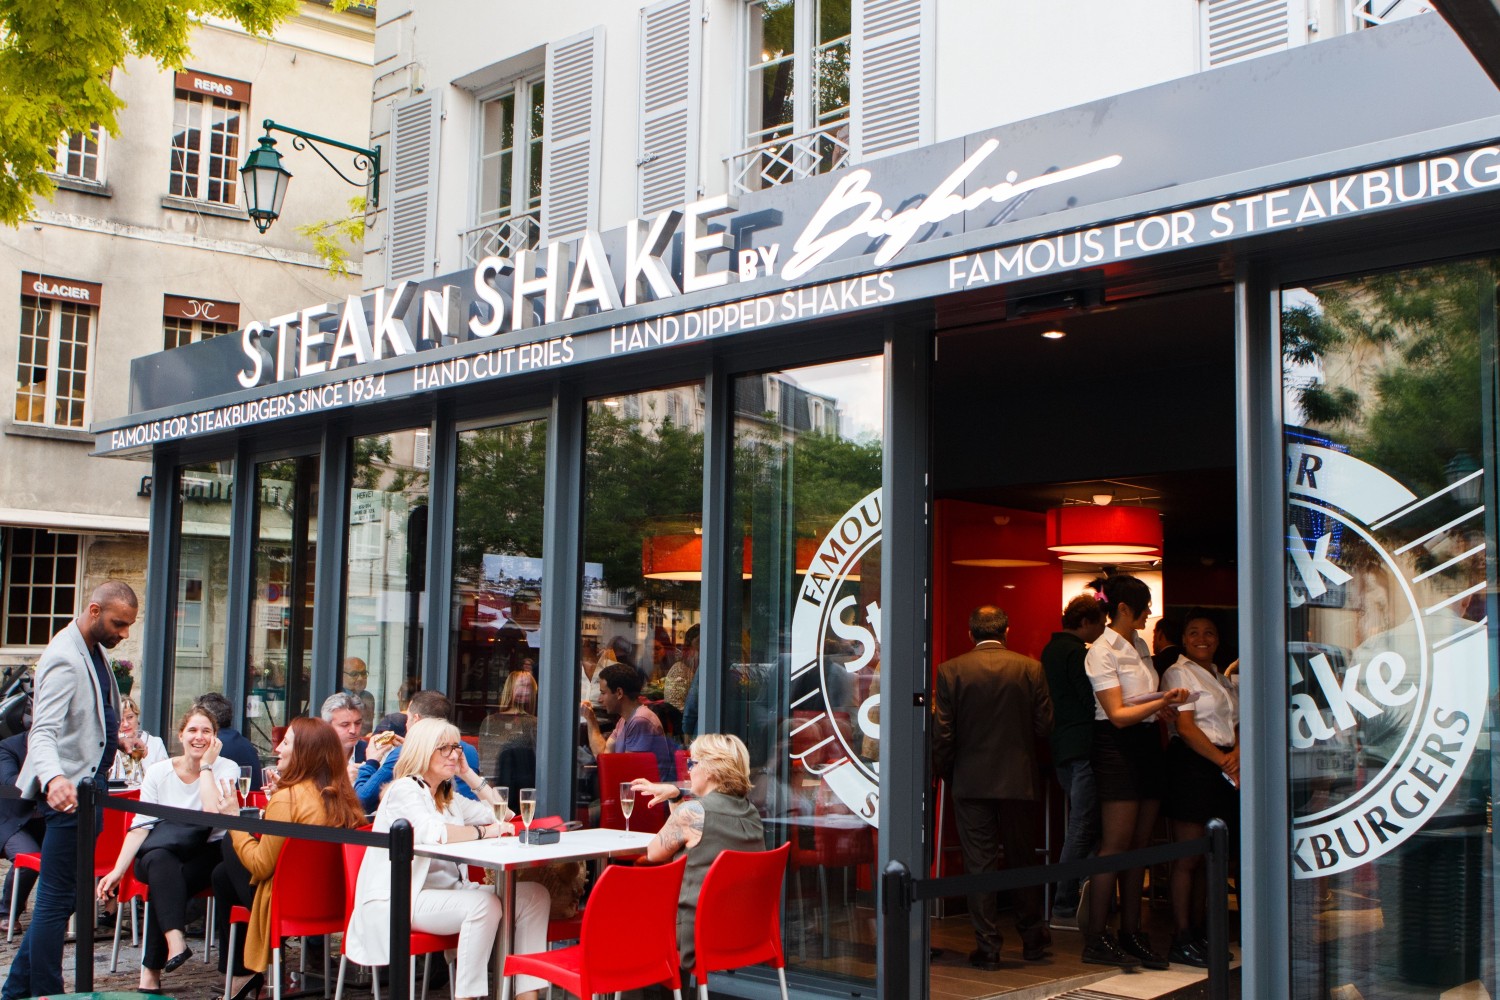 Airsnap Pro | Photo et vidéo d'entreprise et d'événement — Steak'n'Shake, Cannes